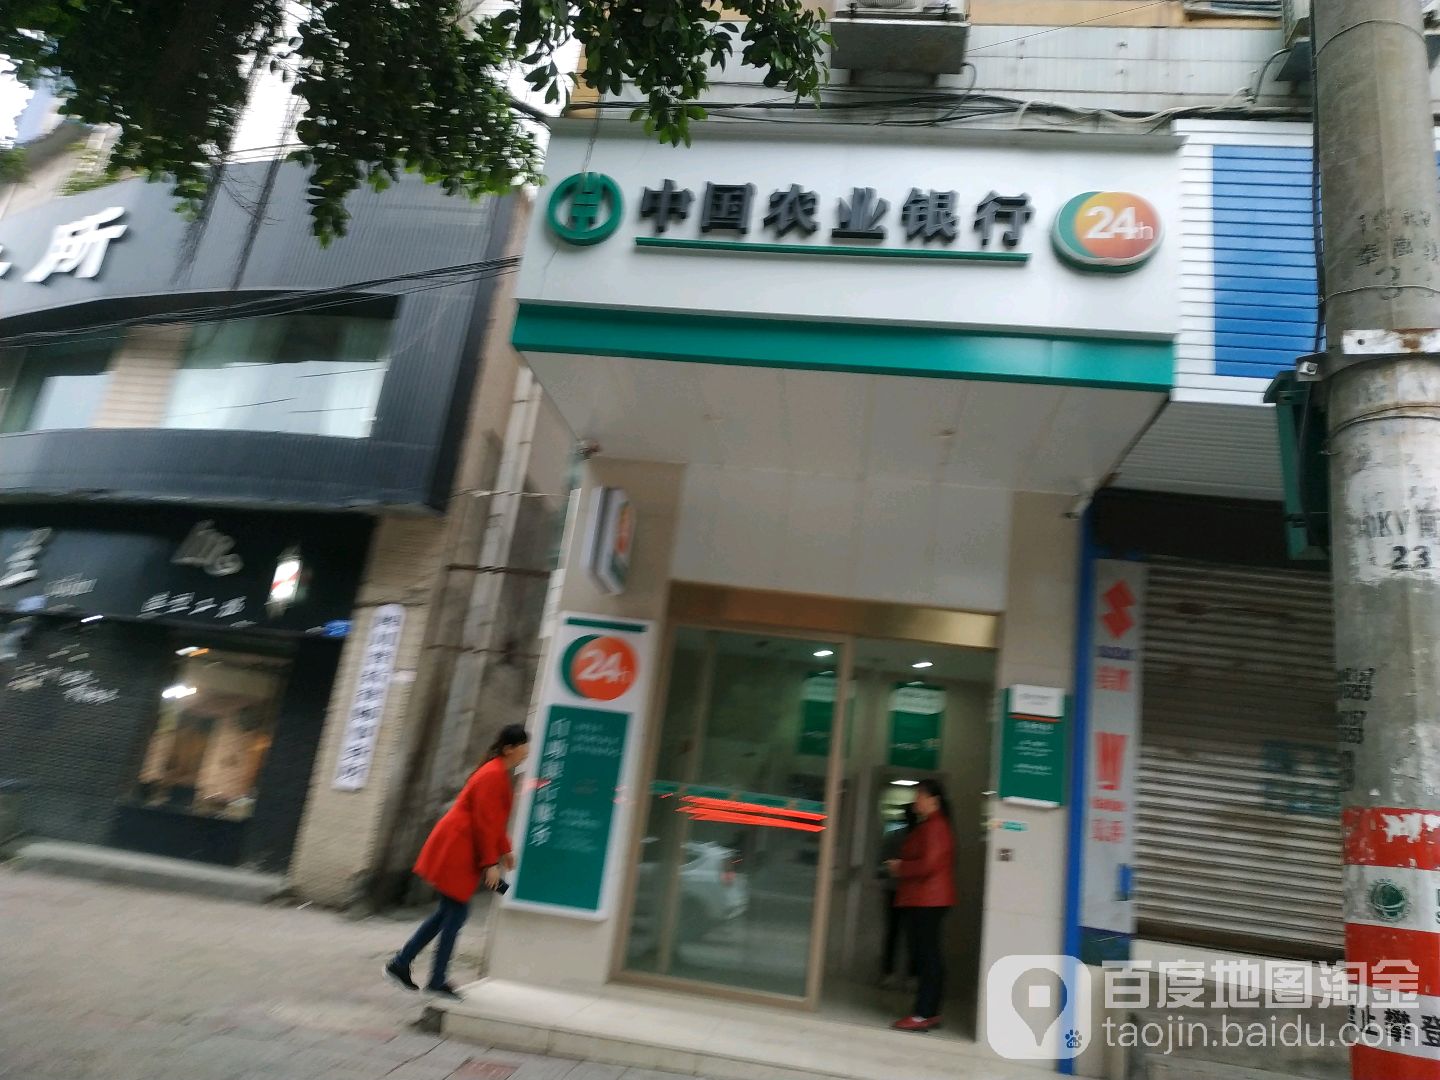 中國農業銀行24小時自助銀行